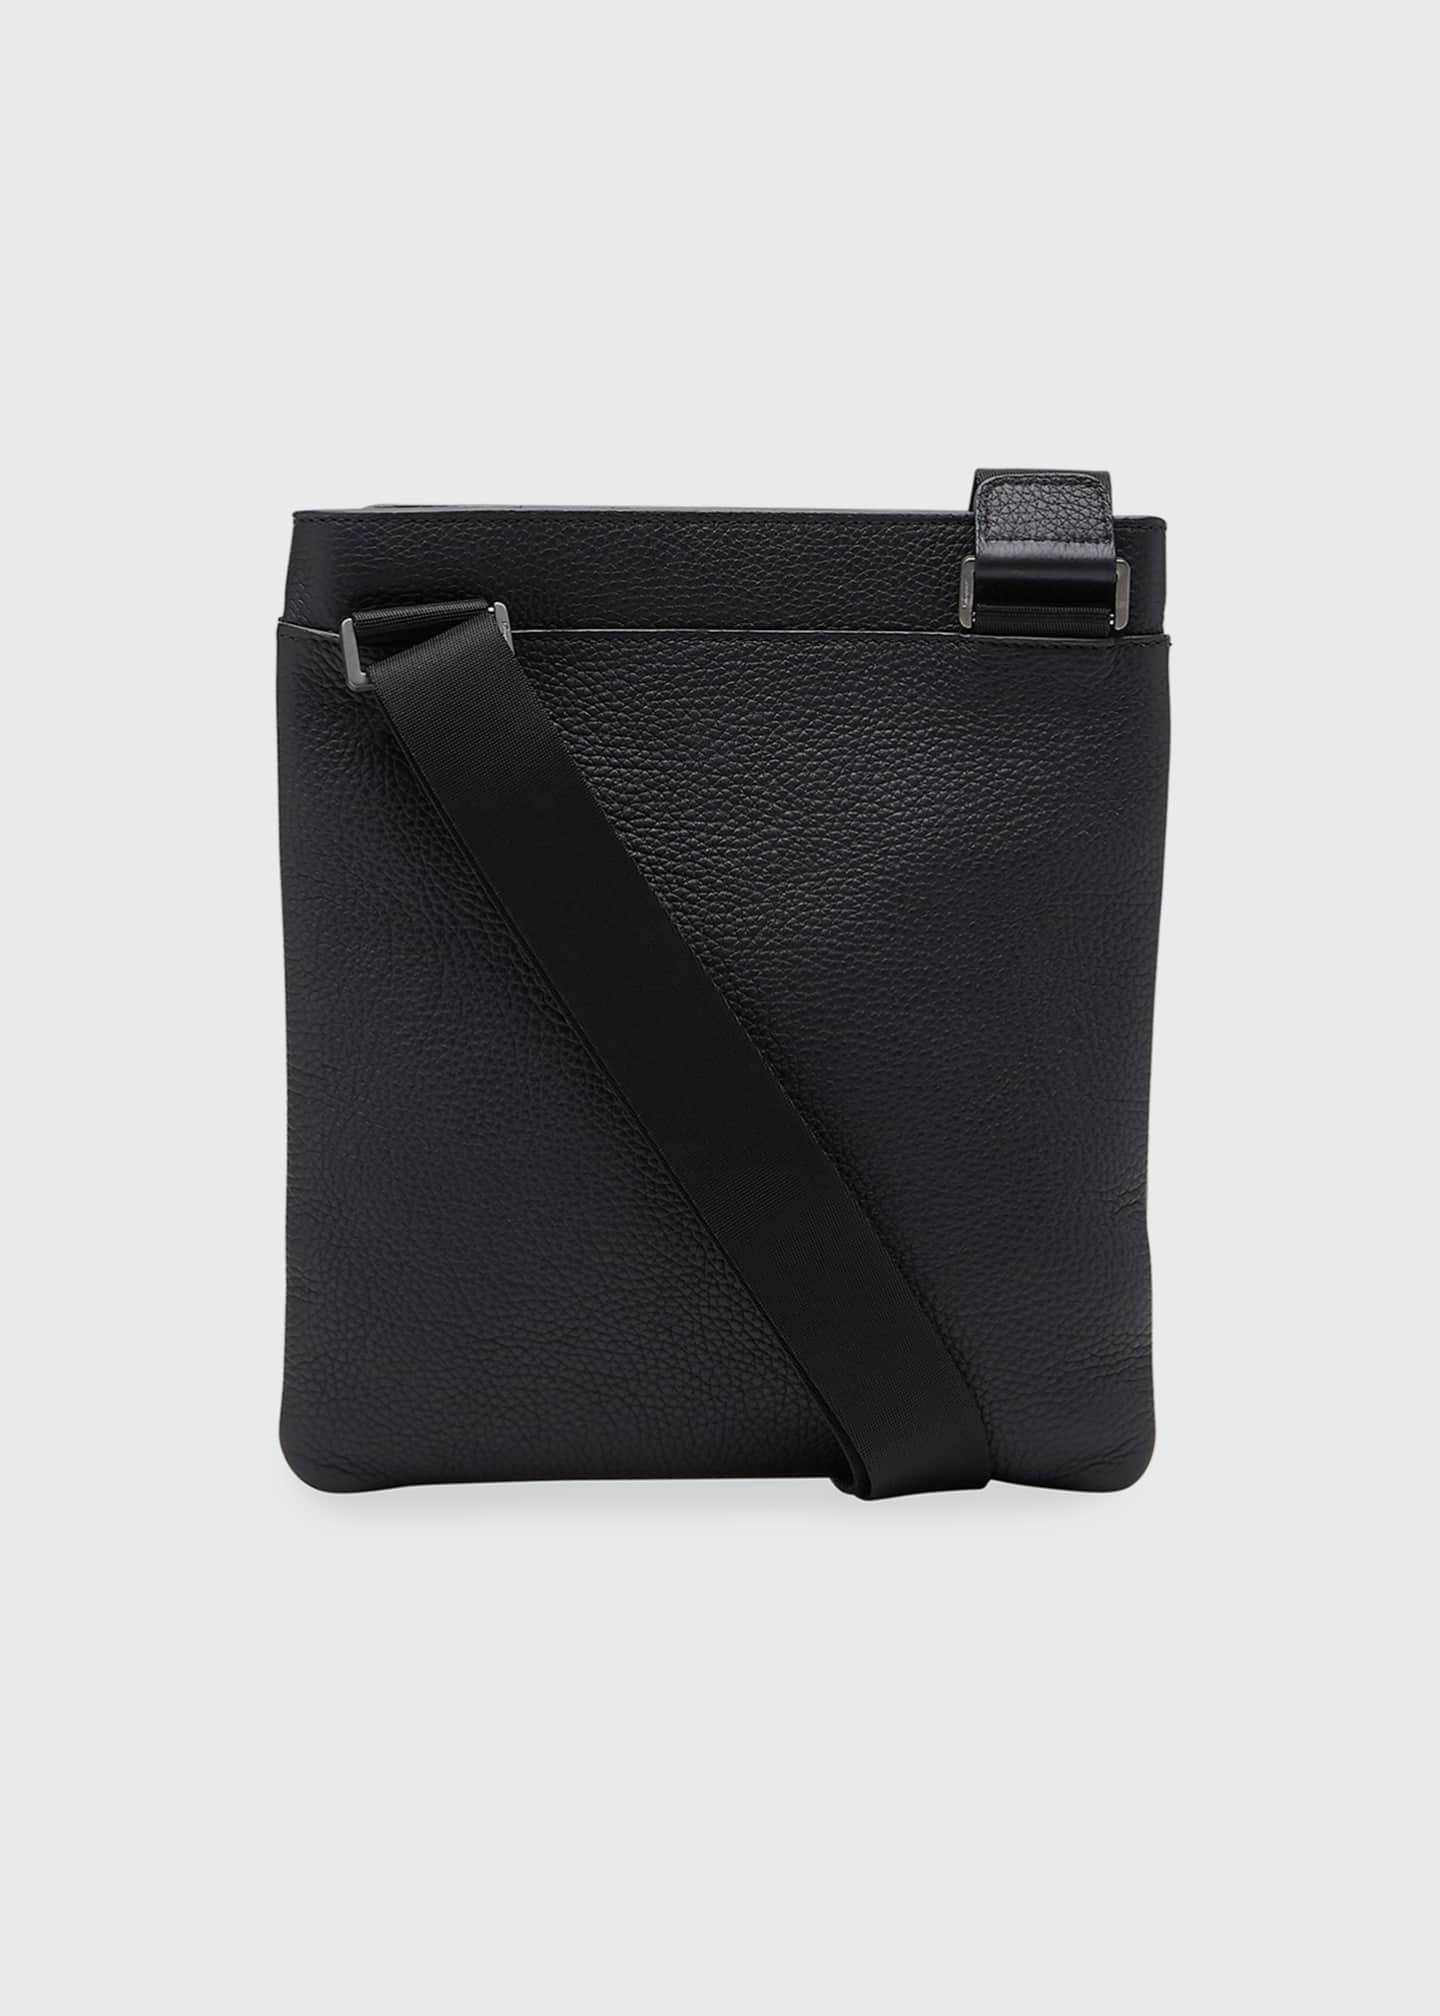 Salvatore Ferragamo Men's Firenze Flat Leather Crossbody Bag - Bergdorf ...